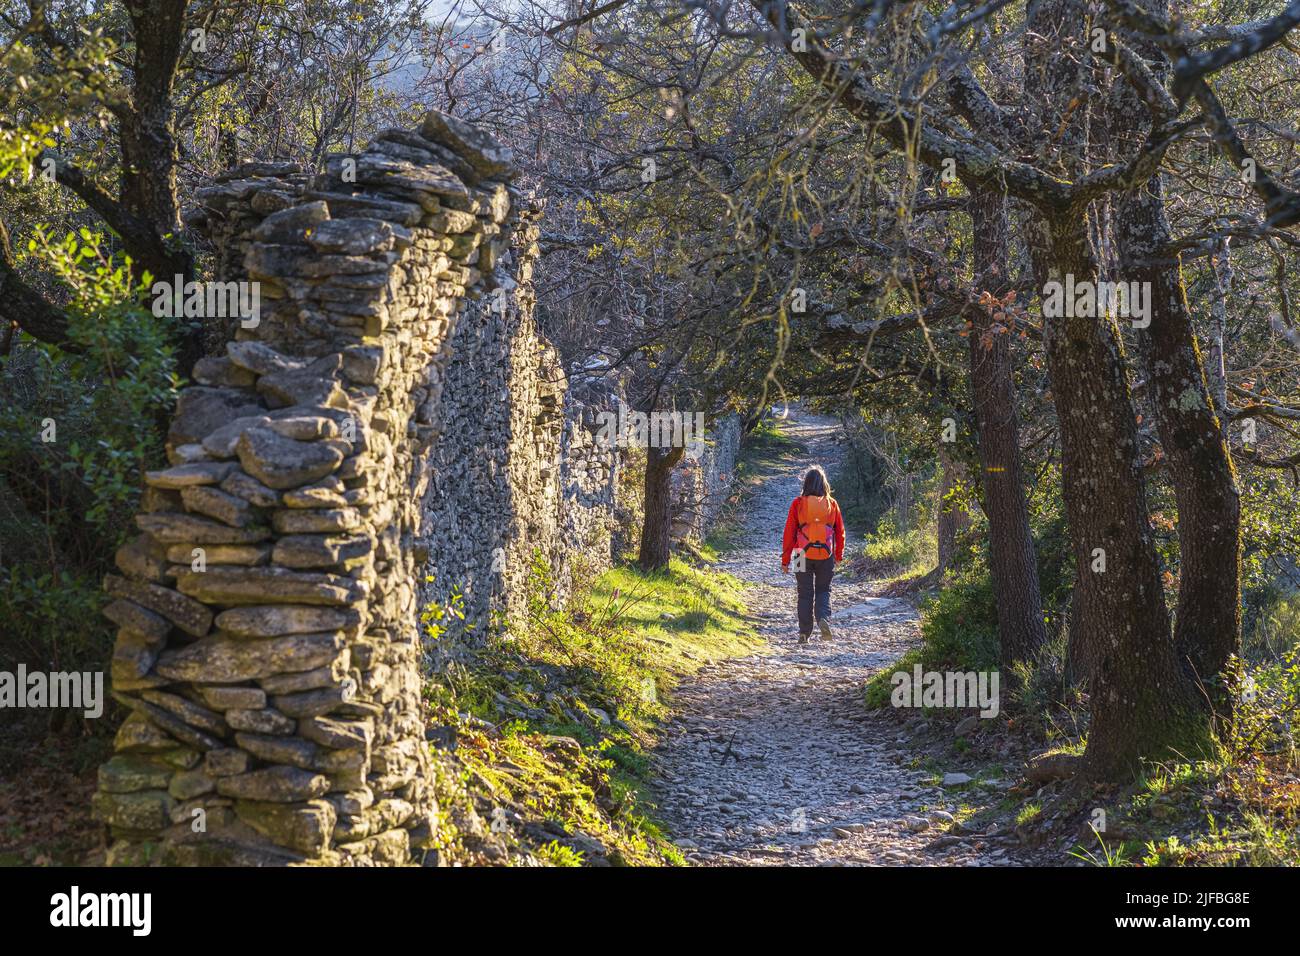 Francia, Vaucluse, el parque natural regional de Luberon, caminata a partir de la pequeña aldea medieval encaramado de Goult, Roche Redonne camino Foto de stock